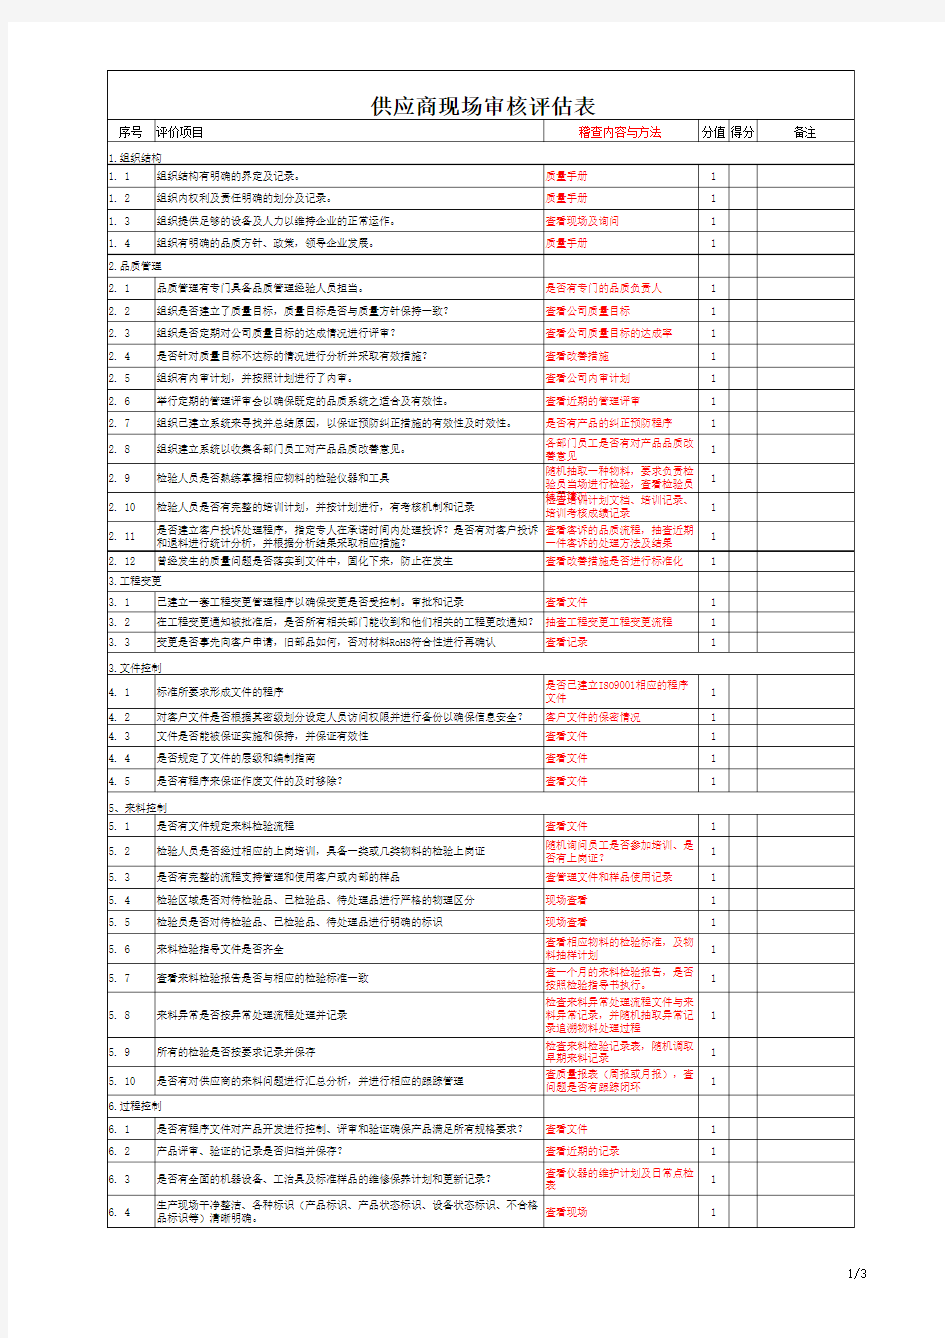 供应商现场审核评估表表